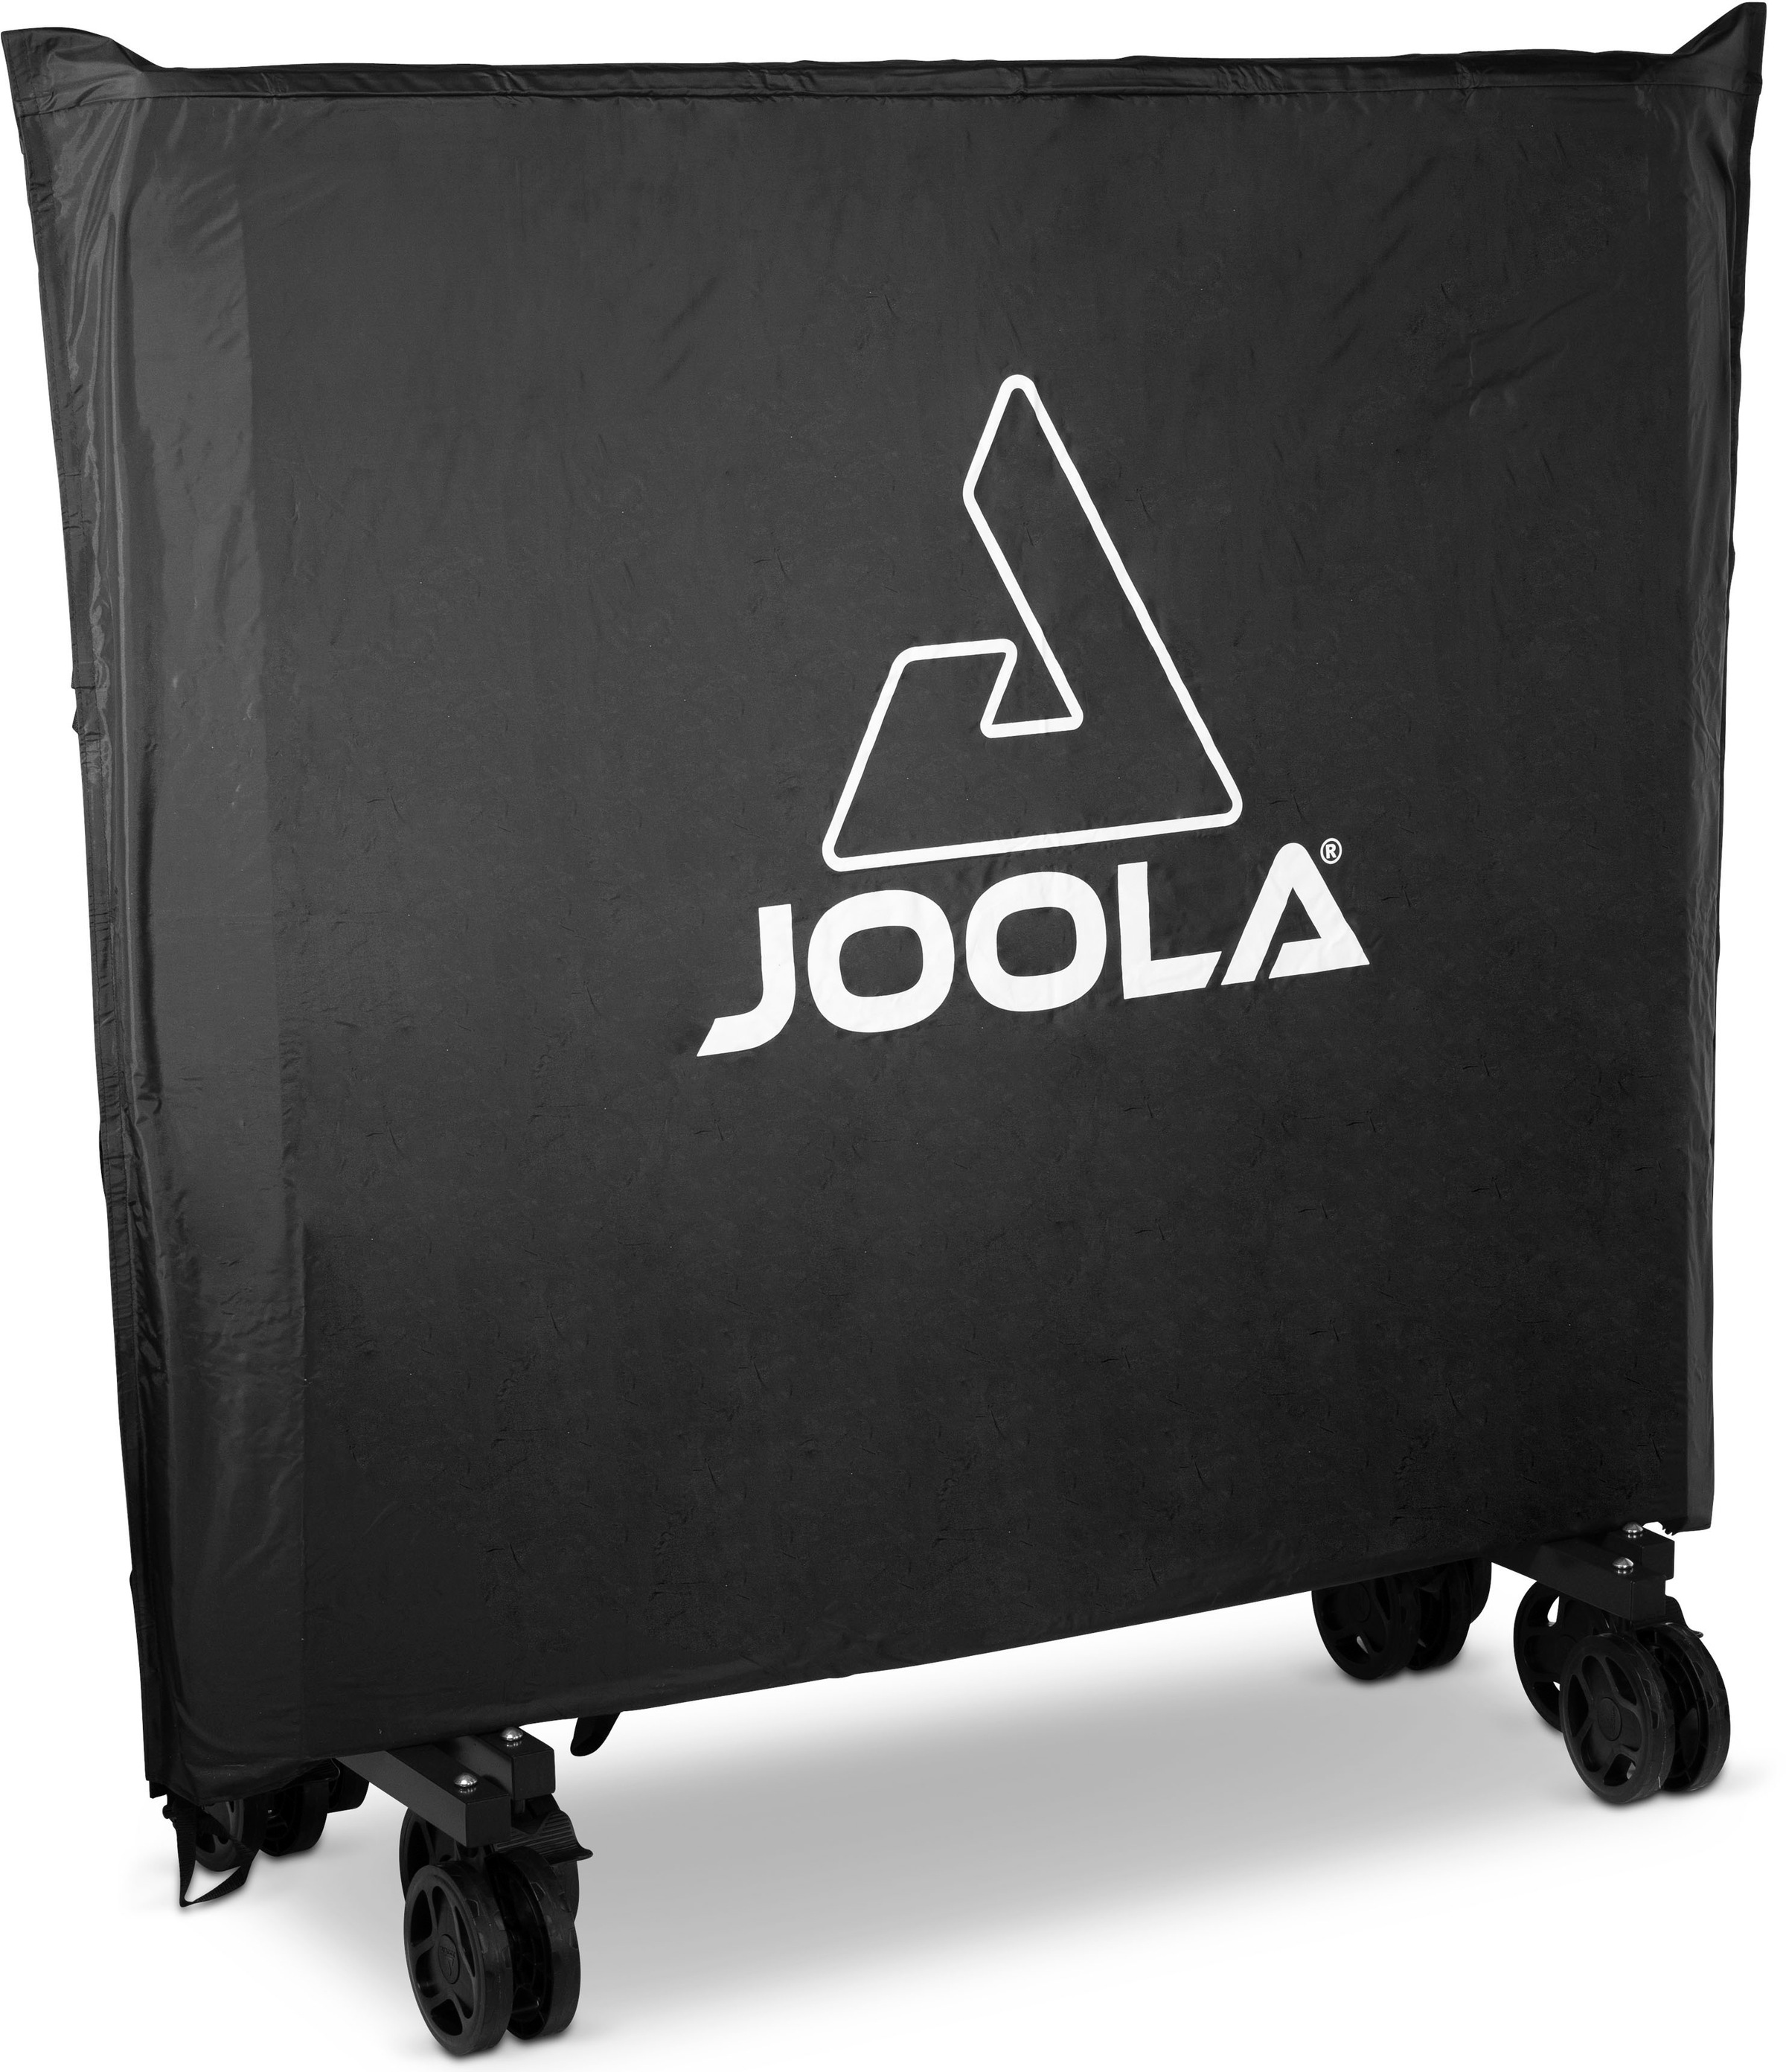 Joola Abdeckhaube "JOOLA Table Cover"